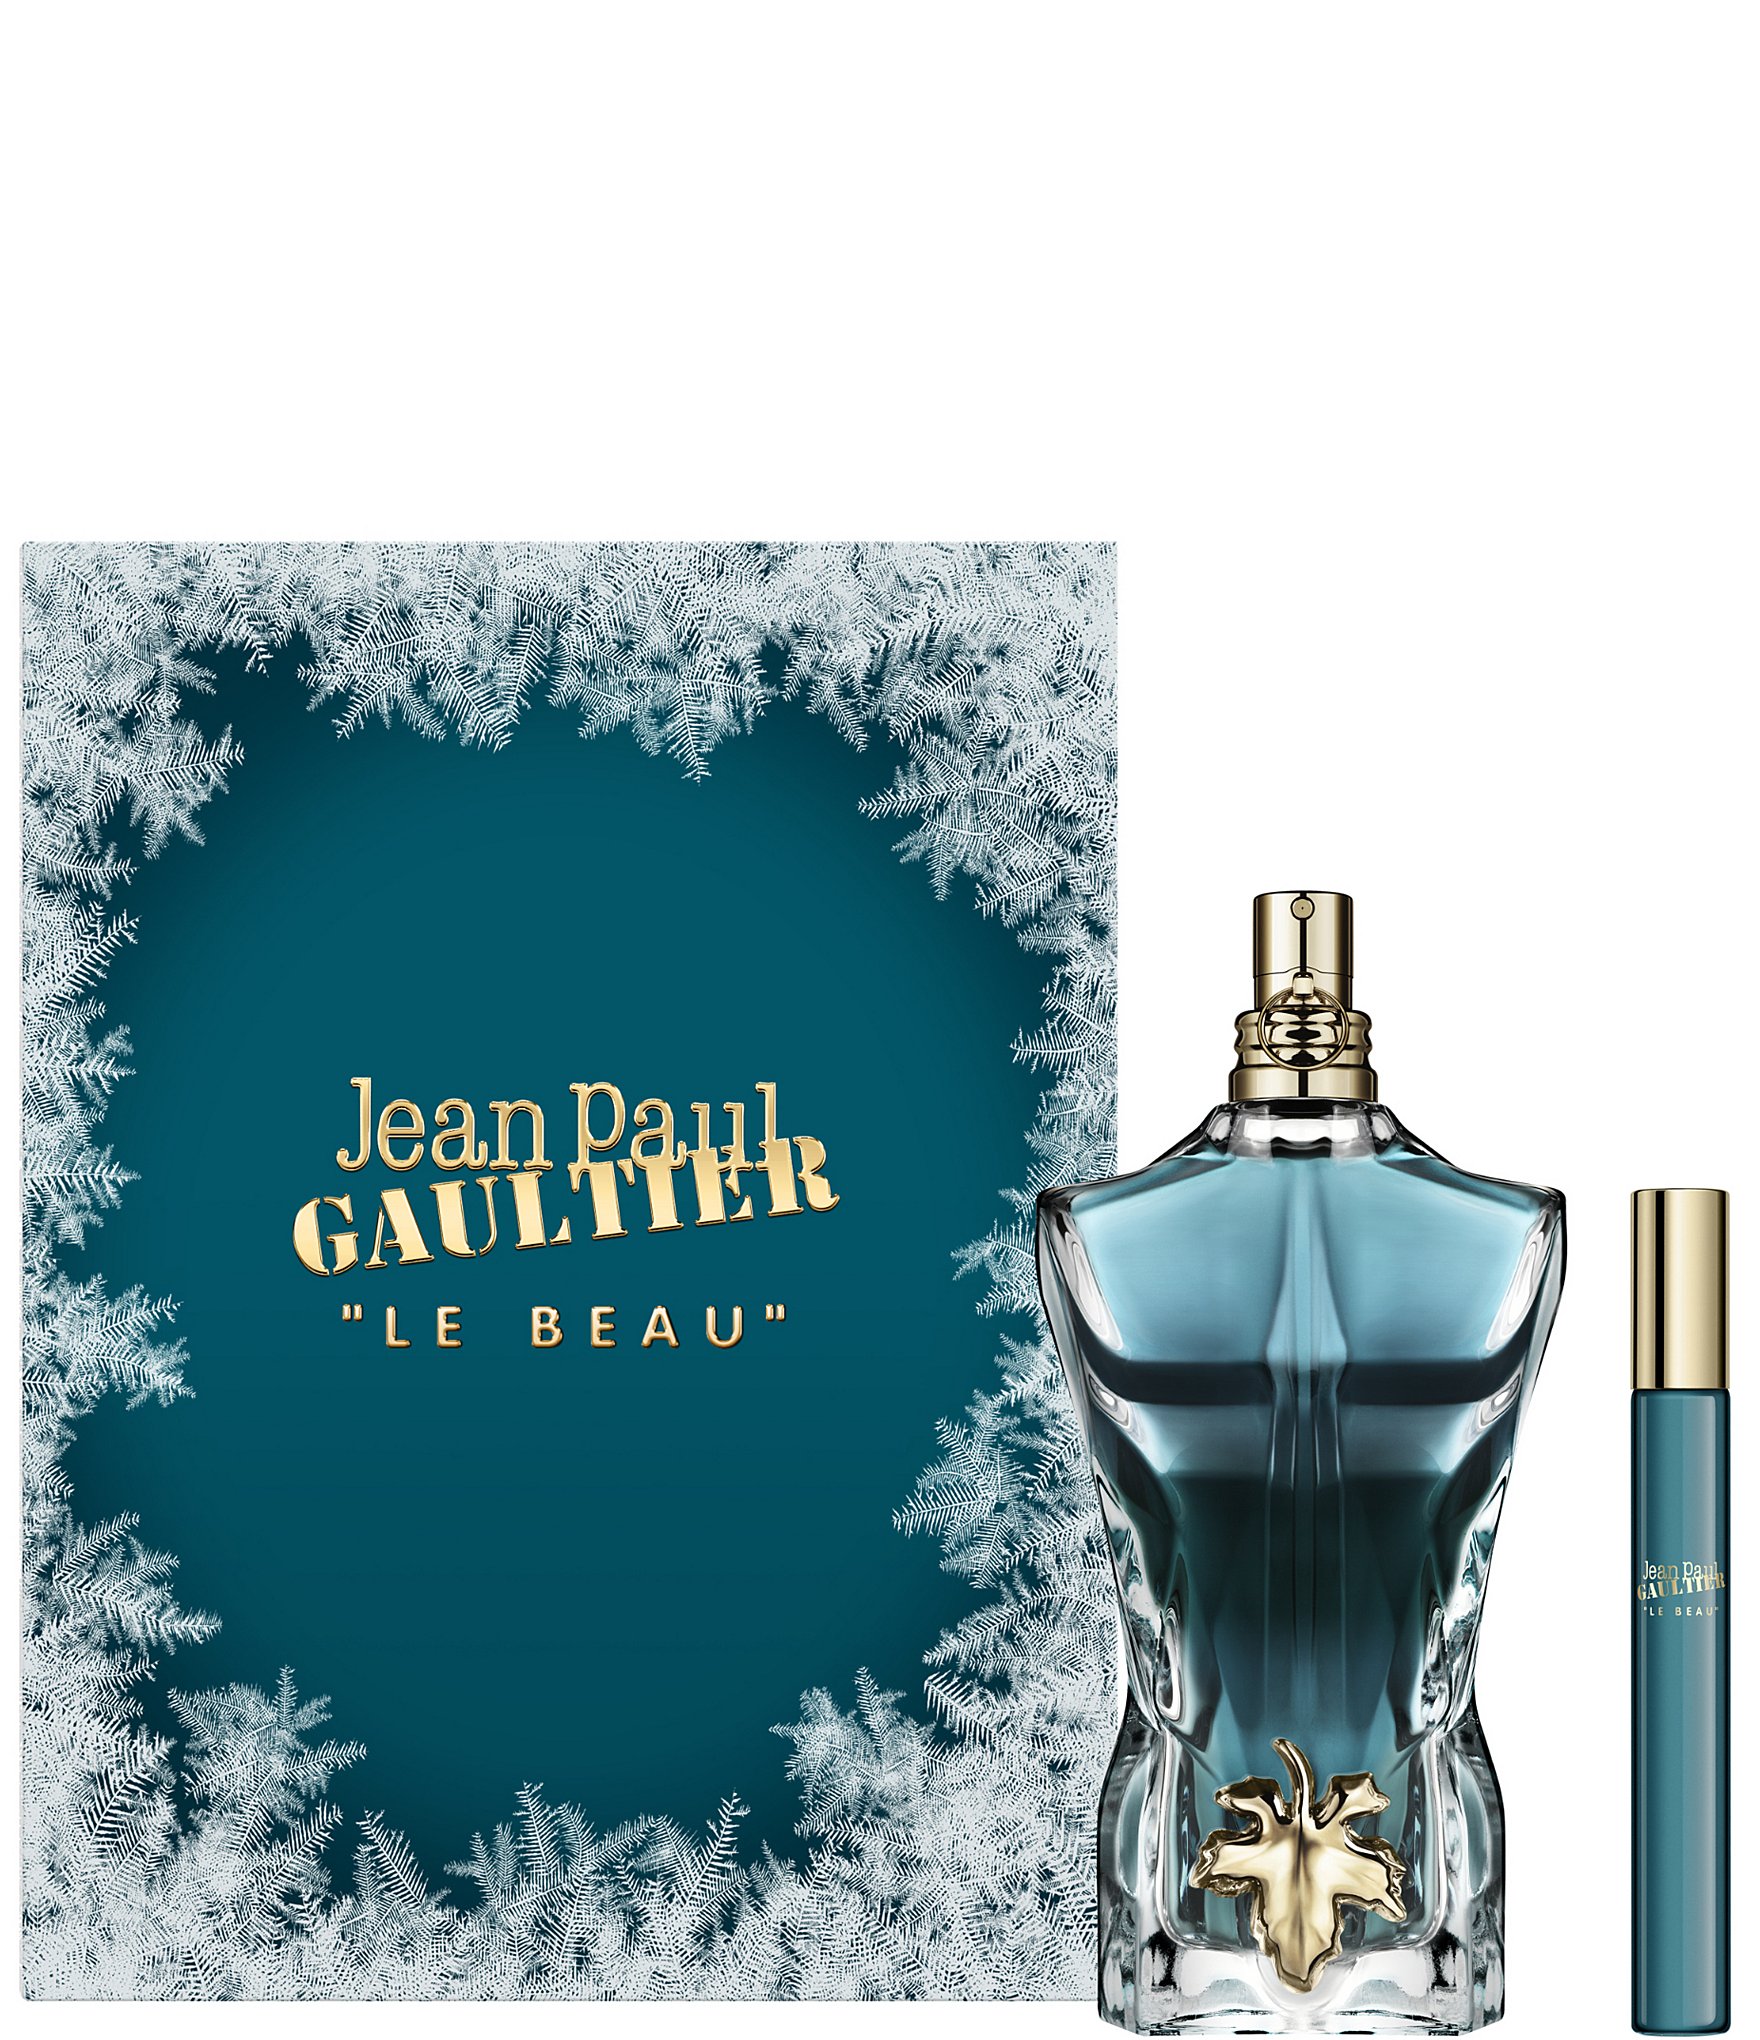 Jean Paul Gaultier Men's Le Beau Eau de Toilette Spray, 4.2 oz